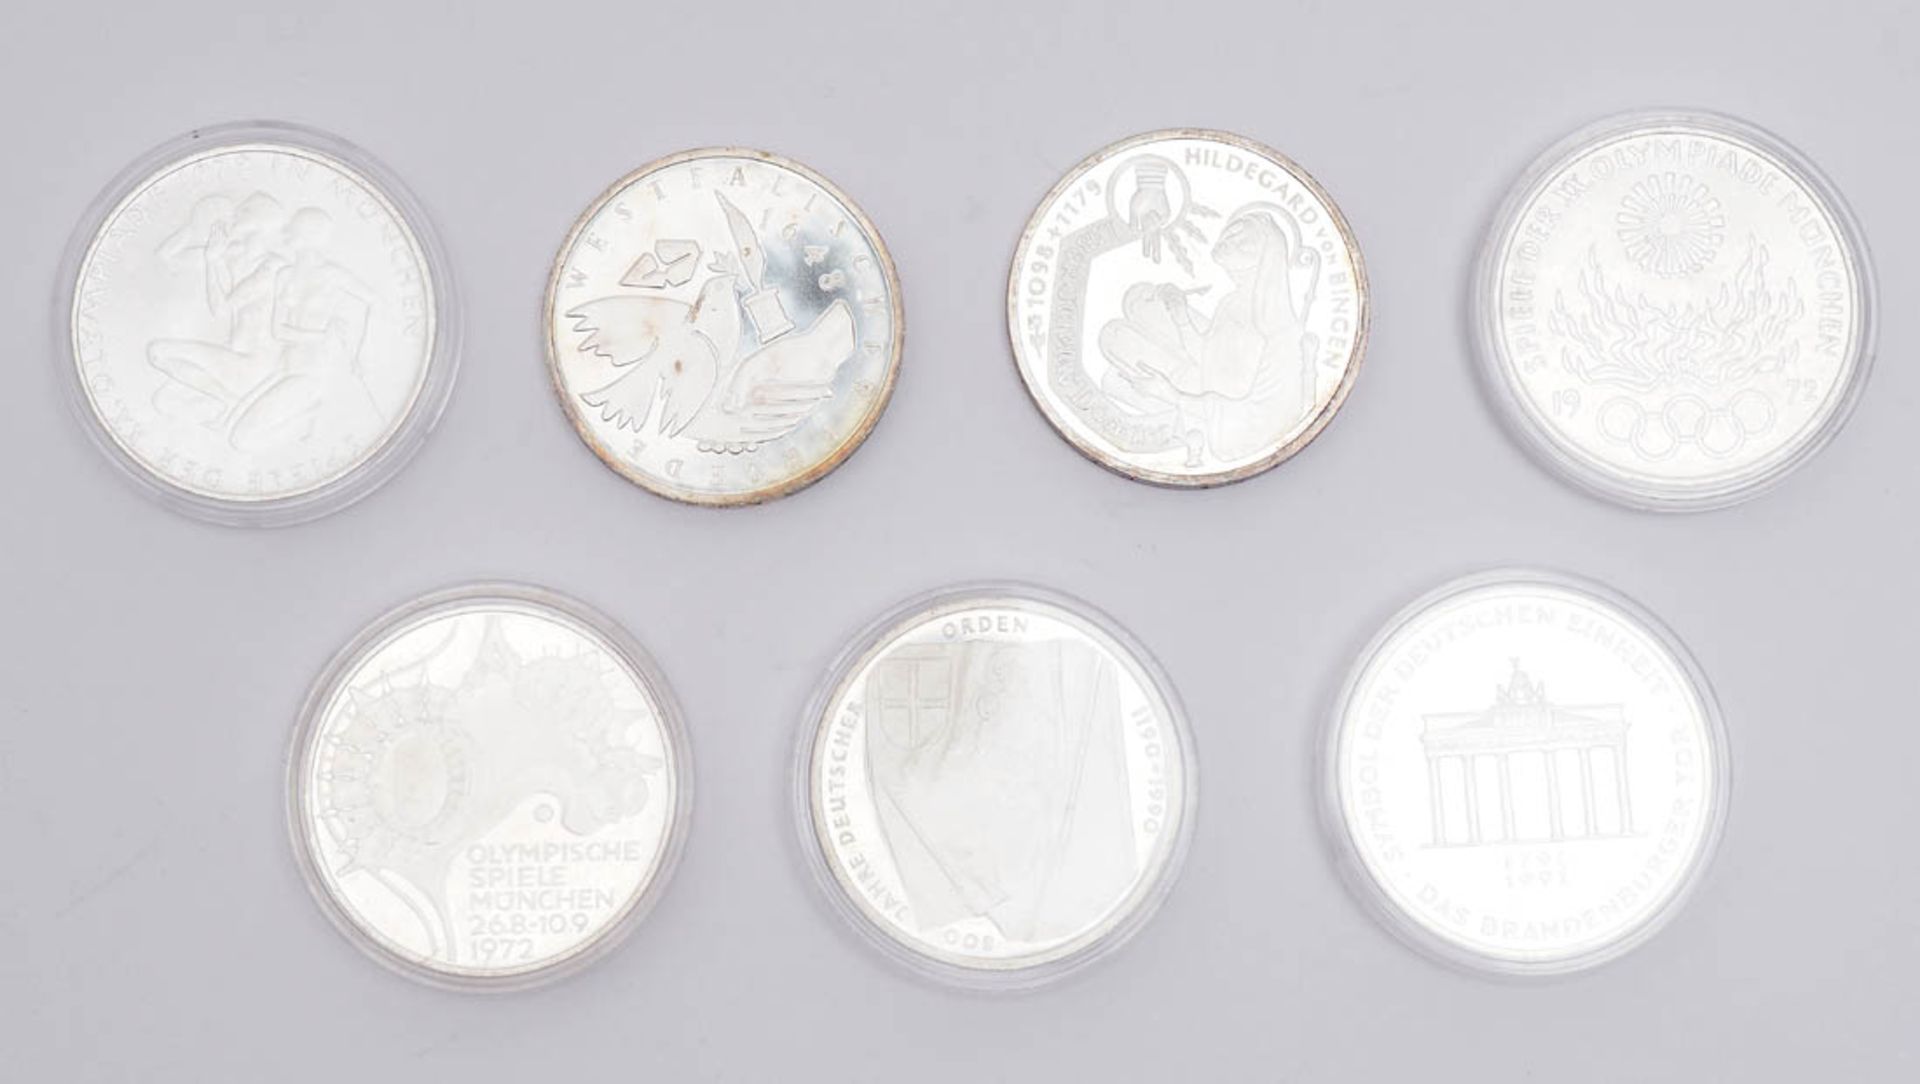 Sieben 10-DM-Münzen - Bild 2 aus 2